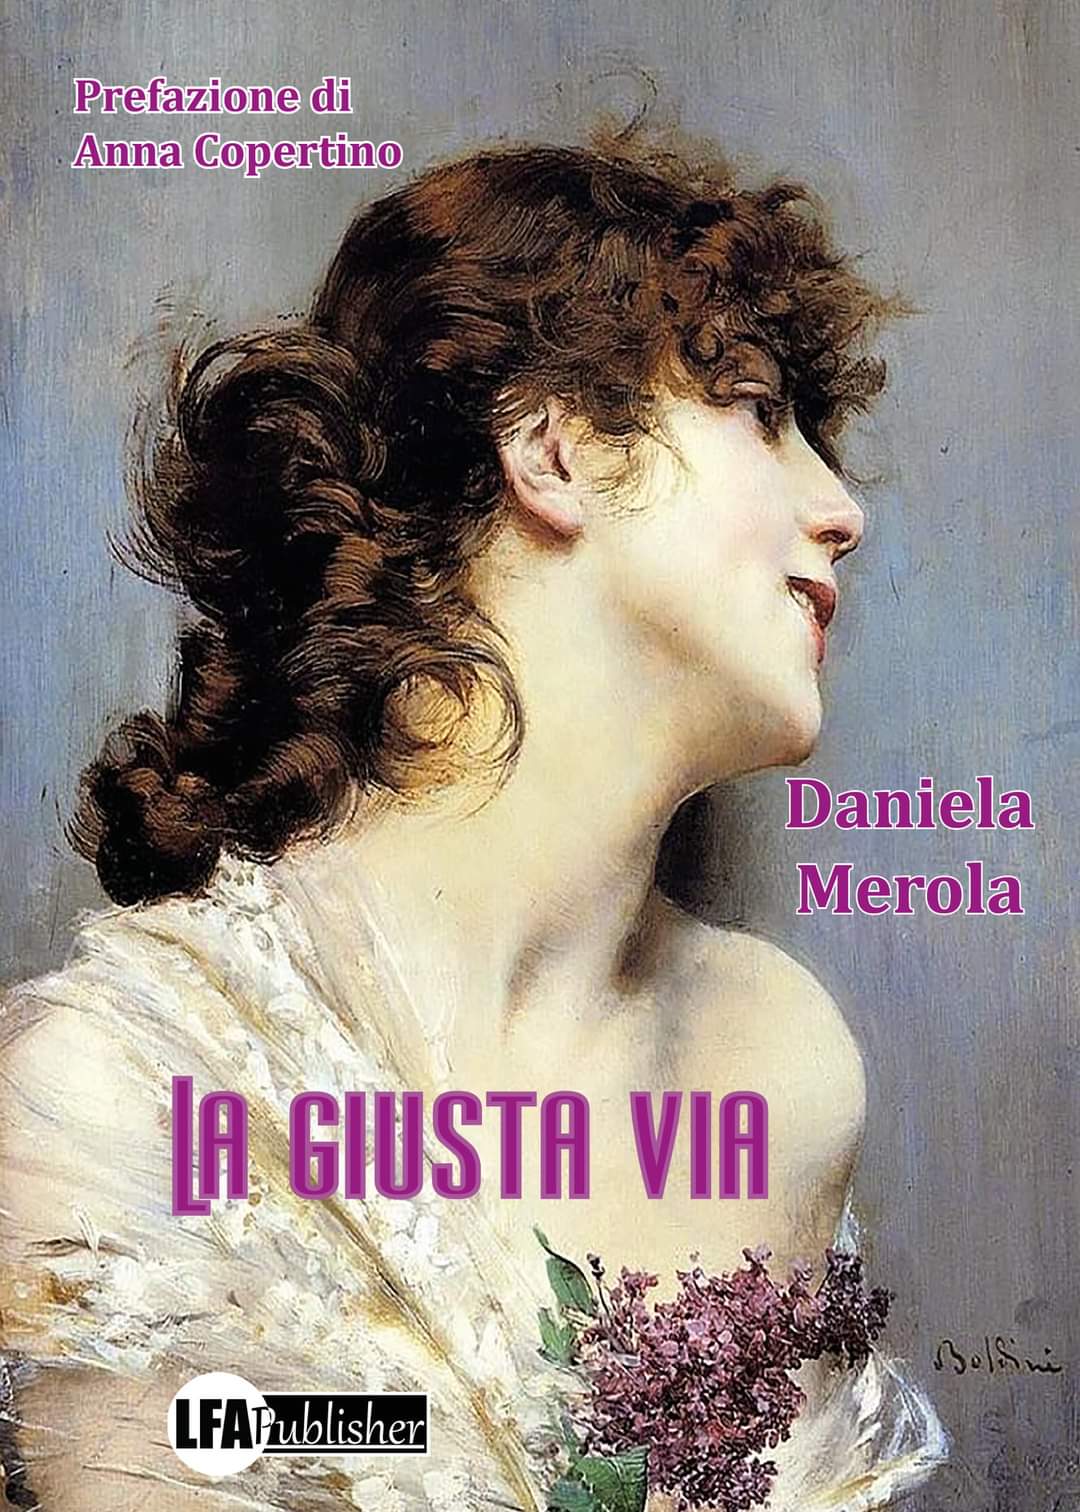 Il 20 febbraio in libreria "La giusta via", il nuovo romanzo di Daniela Merola